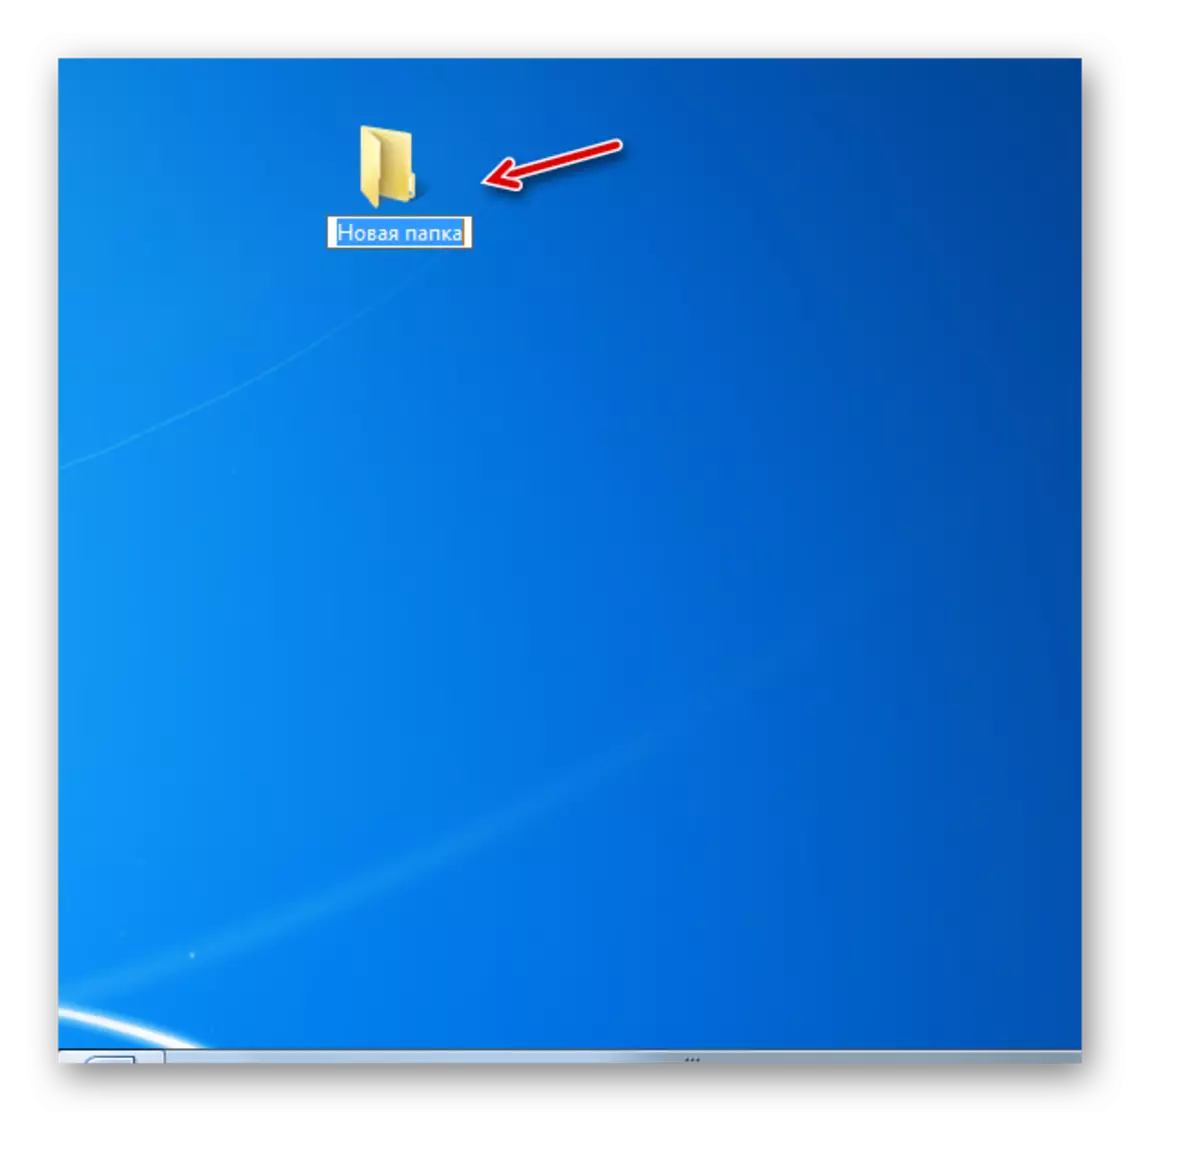 在Windows 7中的桌面上創建的文件夾